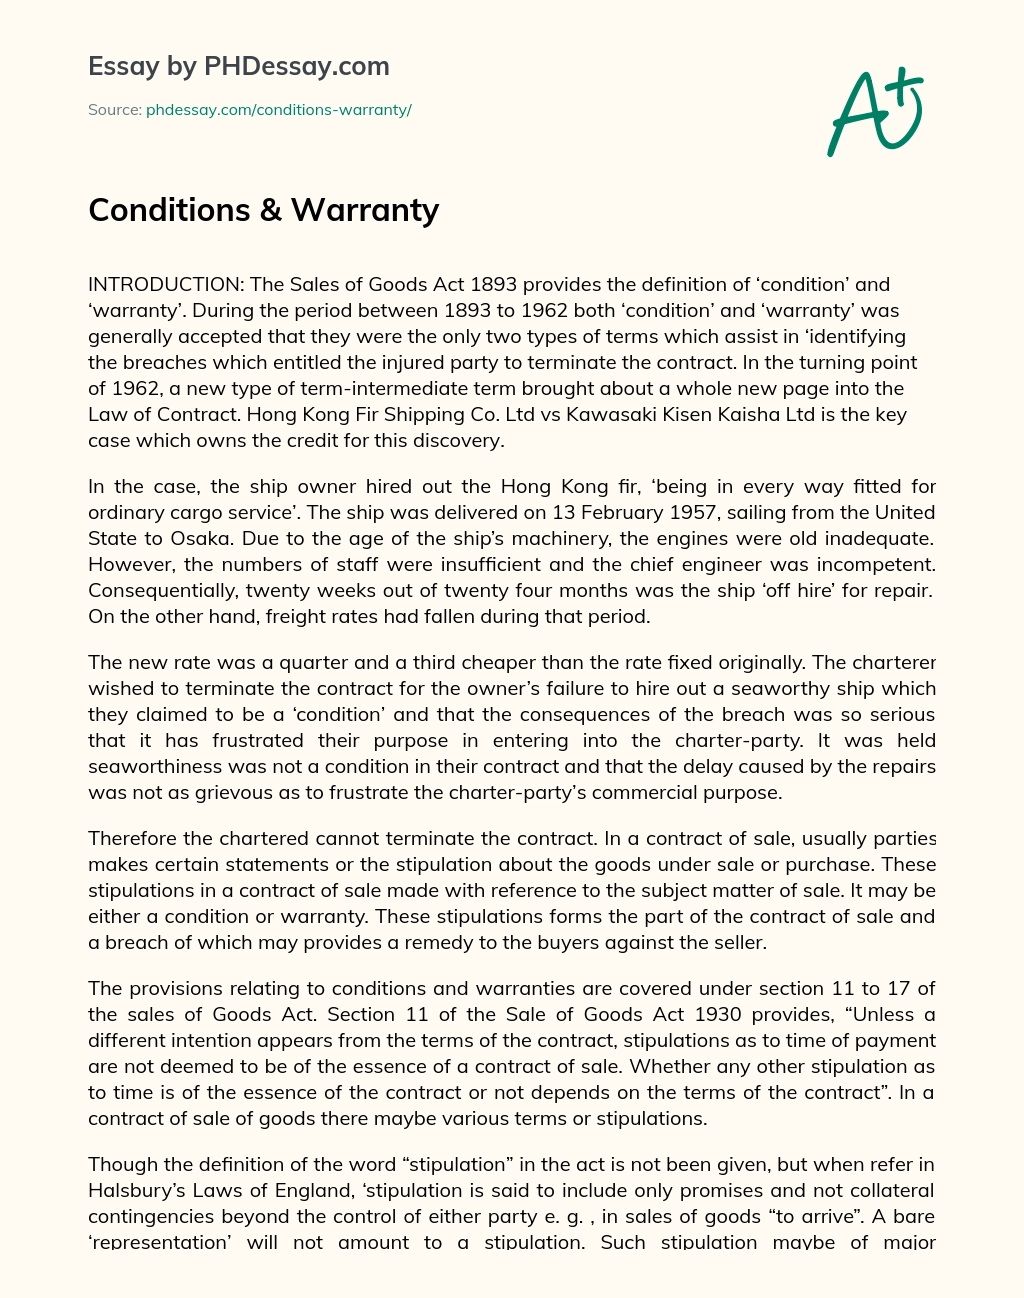 Conditions & Warranty essay